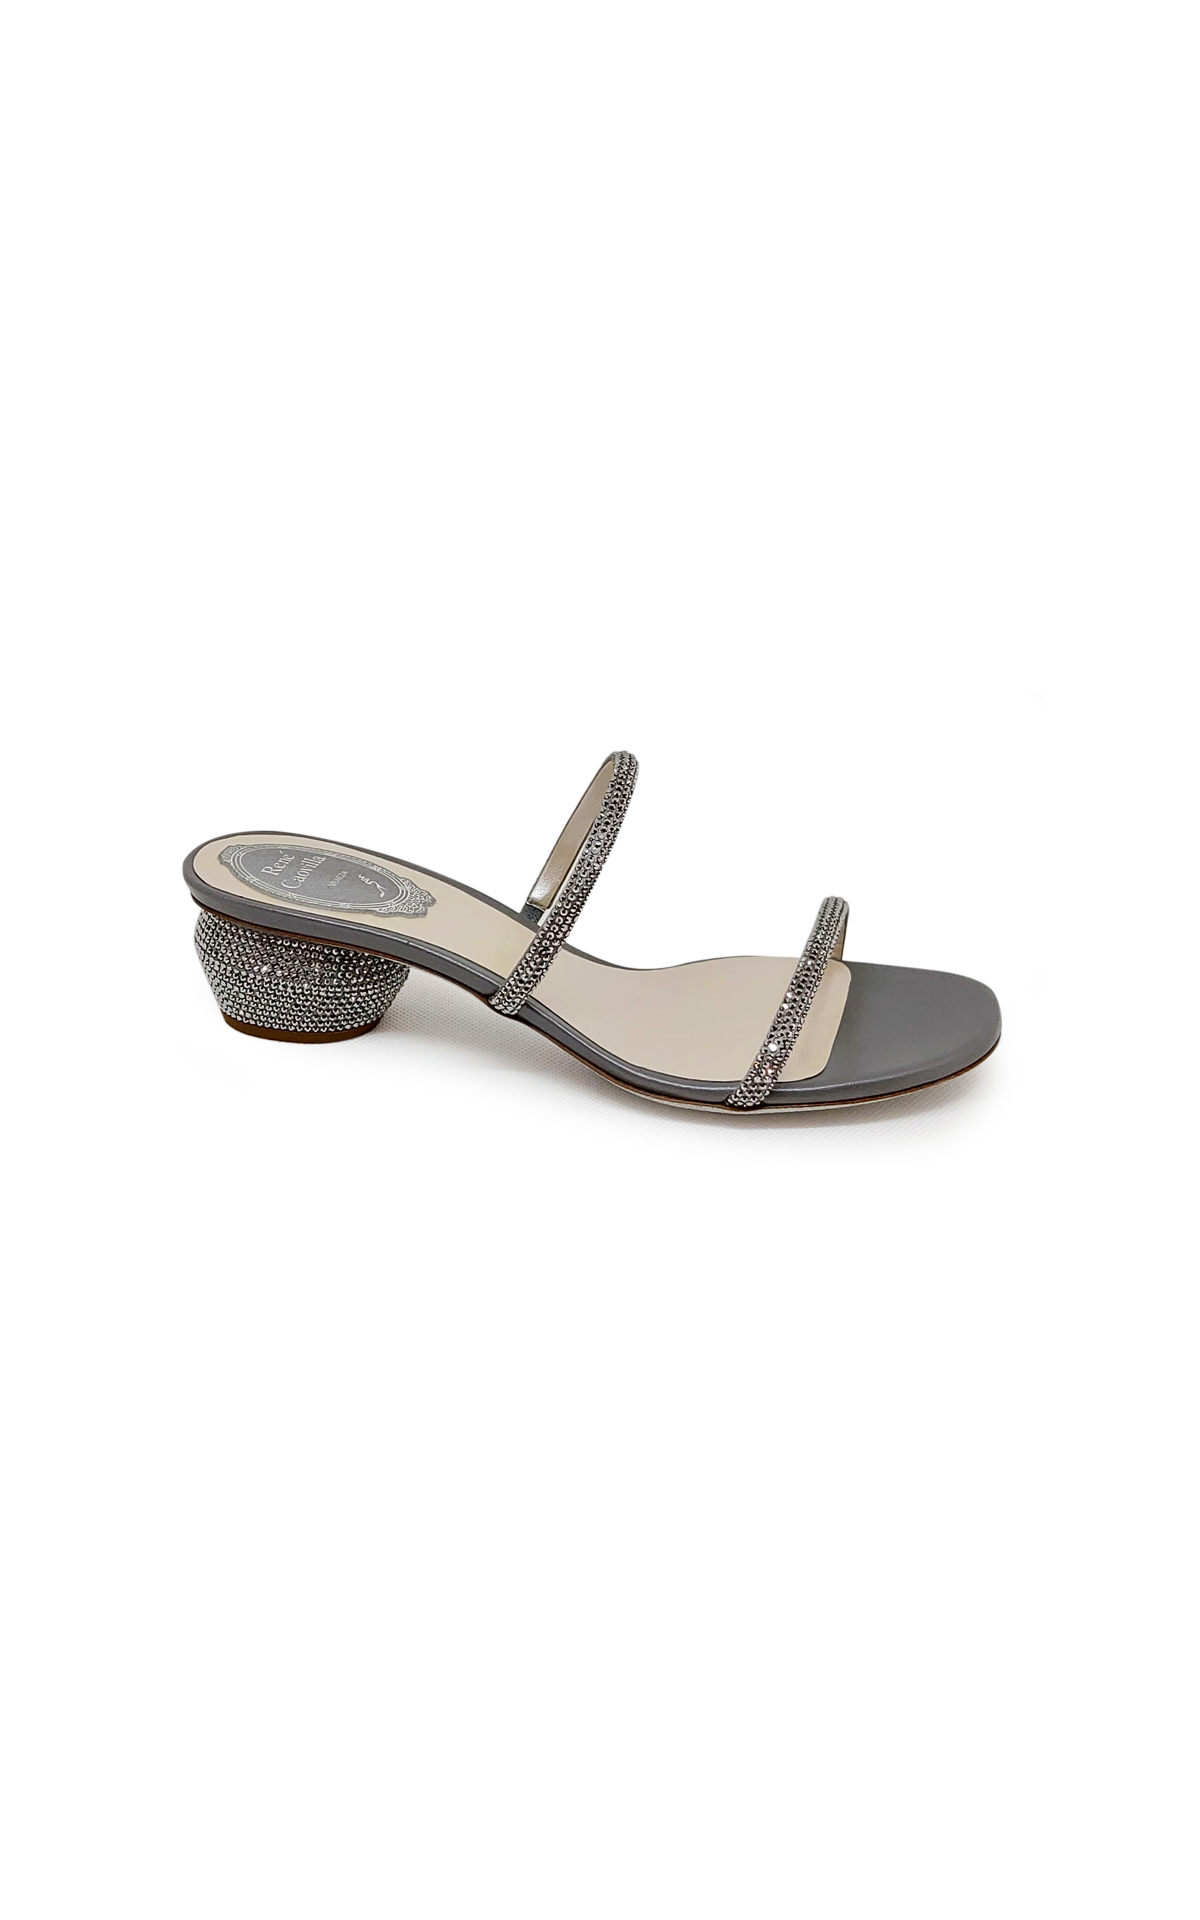 Bessie sandals in satin gray